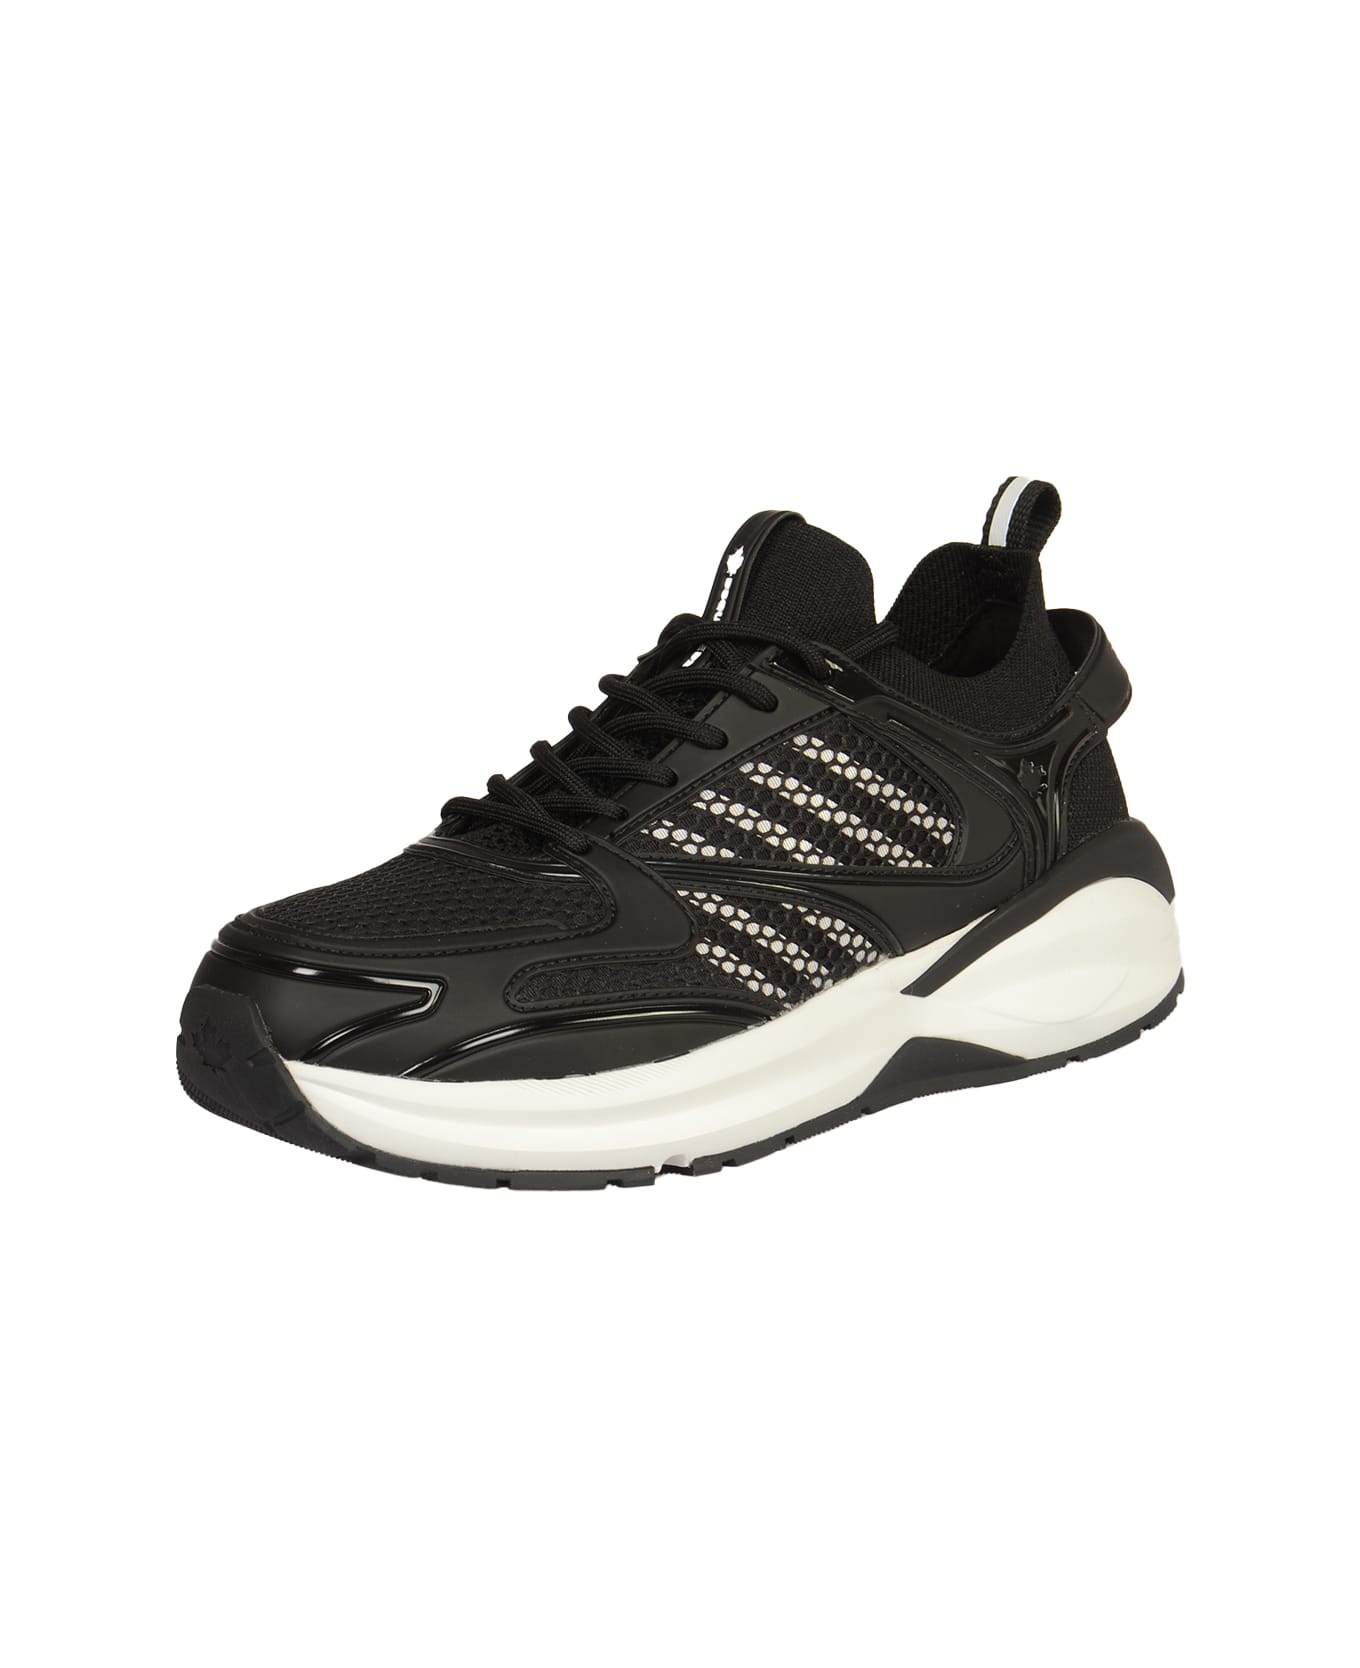 Dsquared2 Dash Sneakers - Black/White